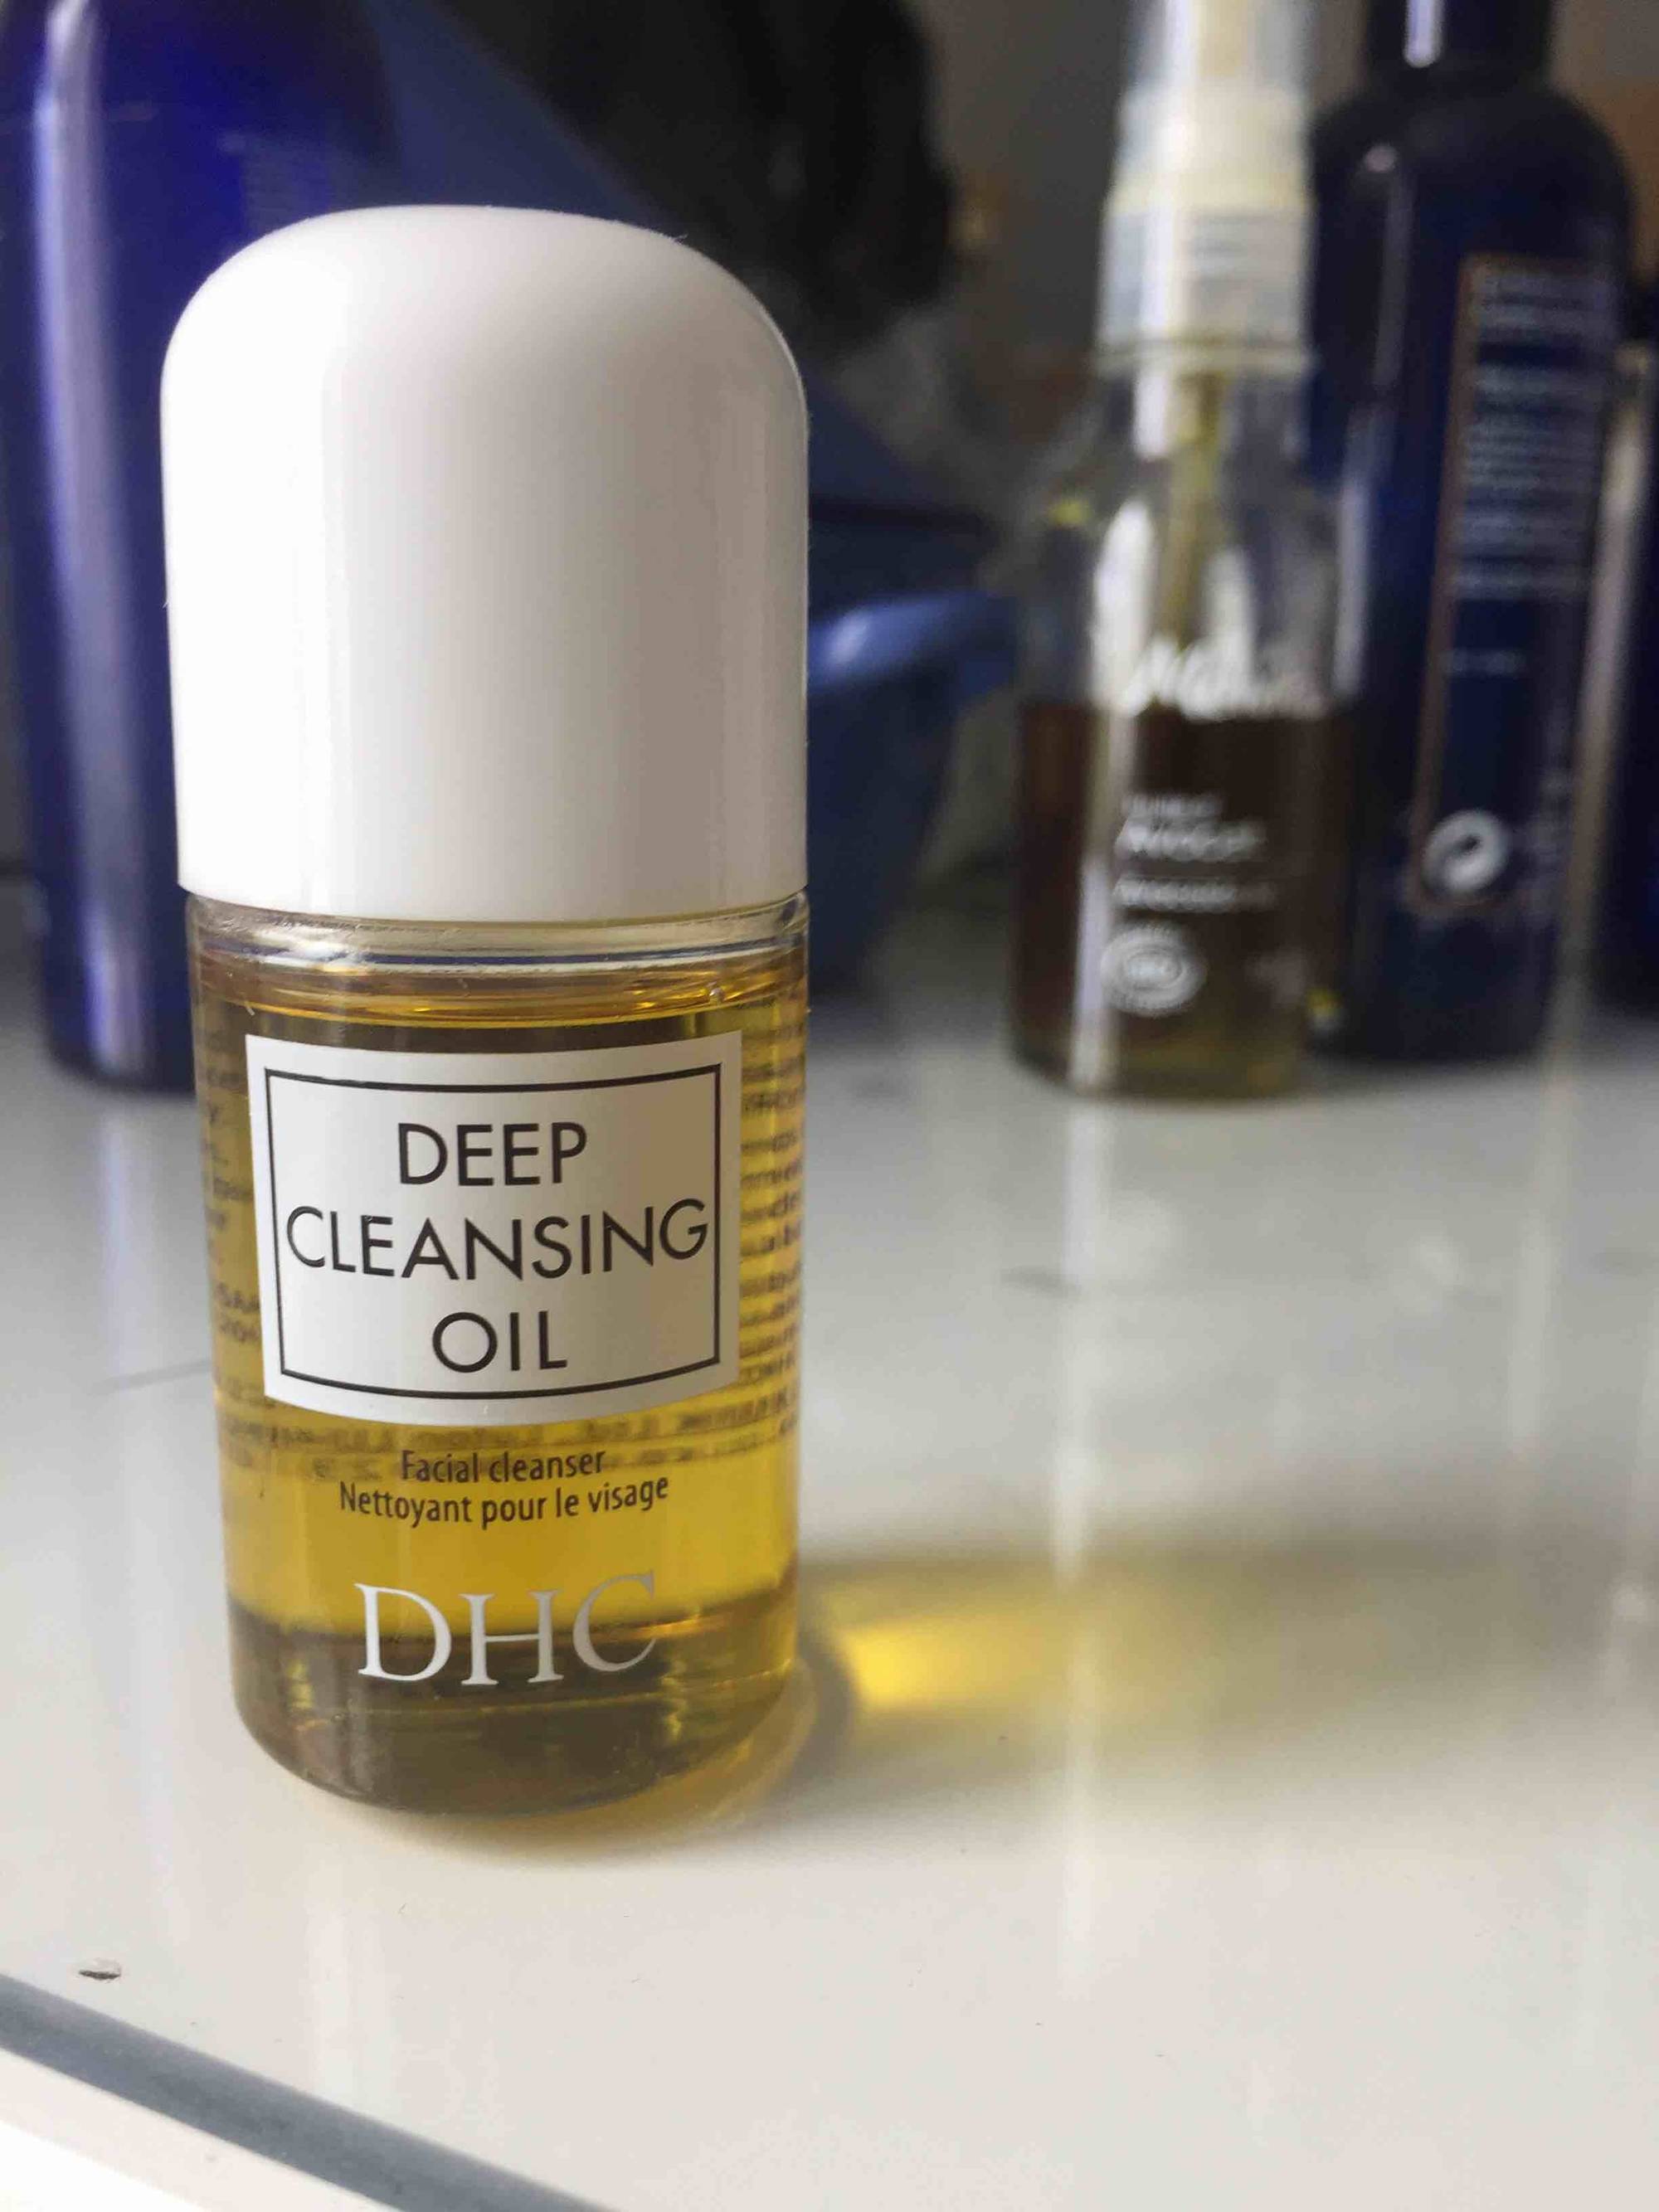 DHC - Deep cleansing oil - Nettoyant pour le visage